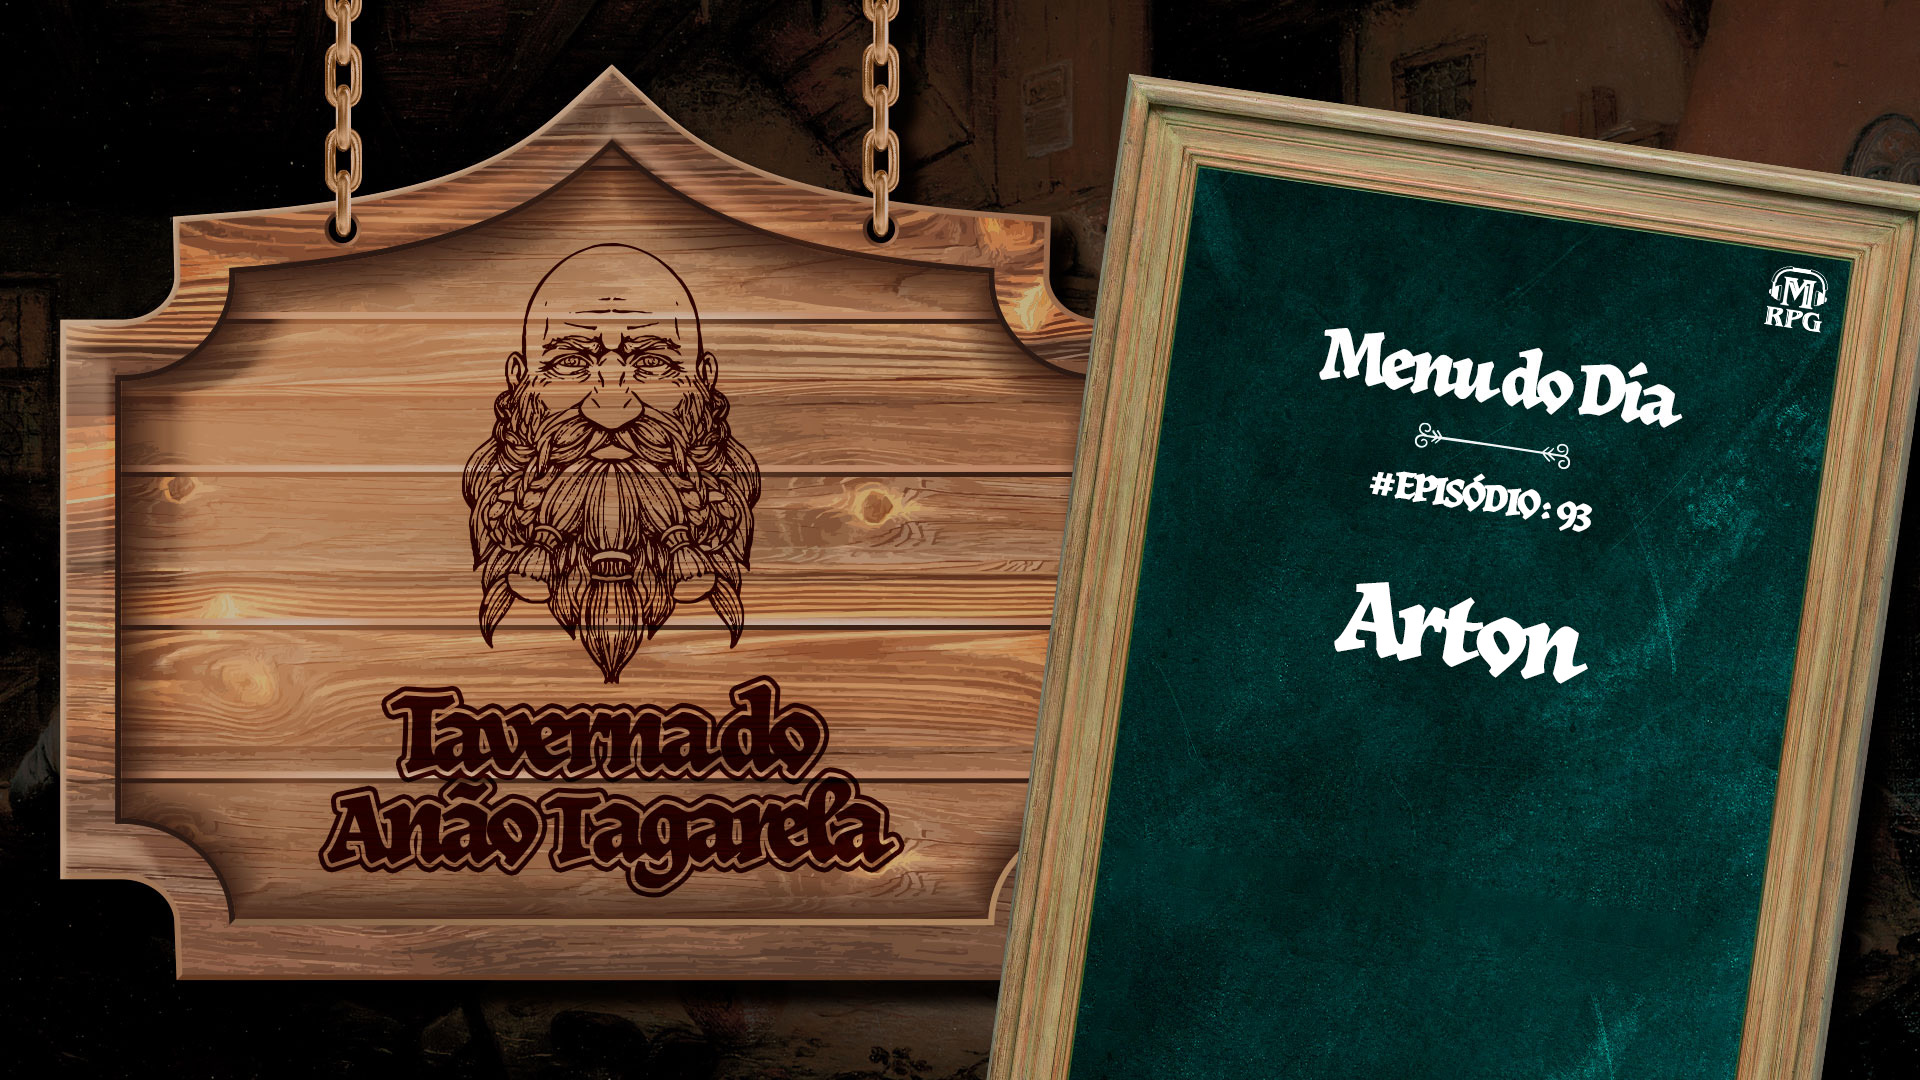 Arton – Taverna do Anão Tagarela #93